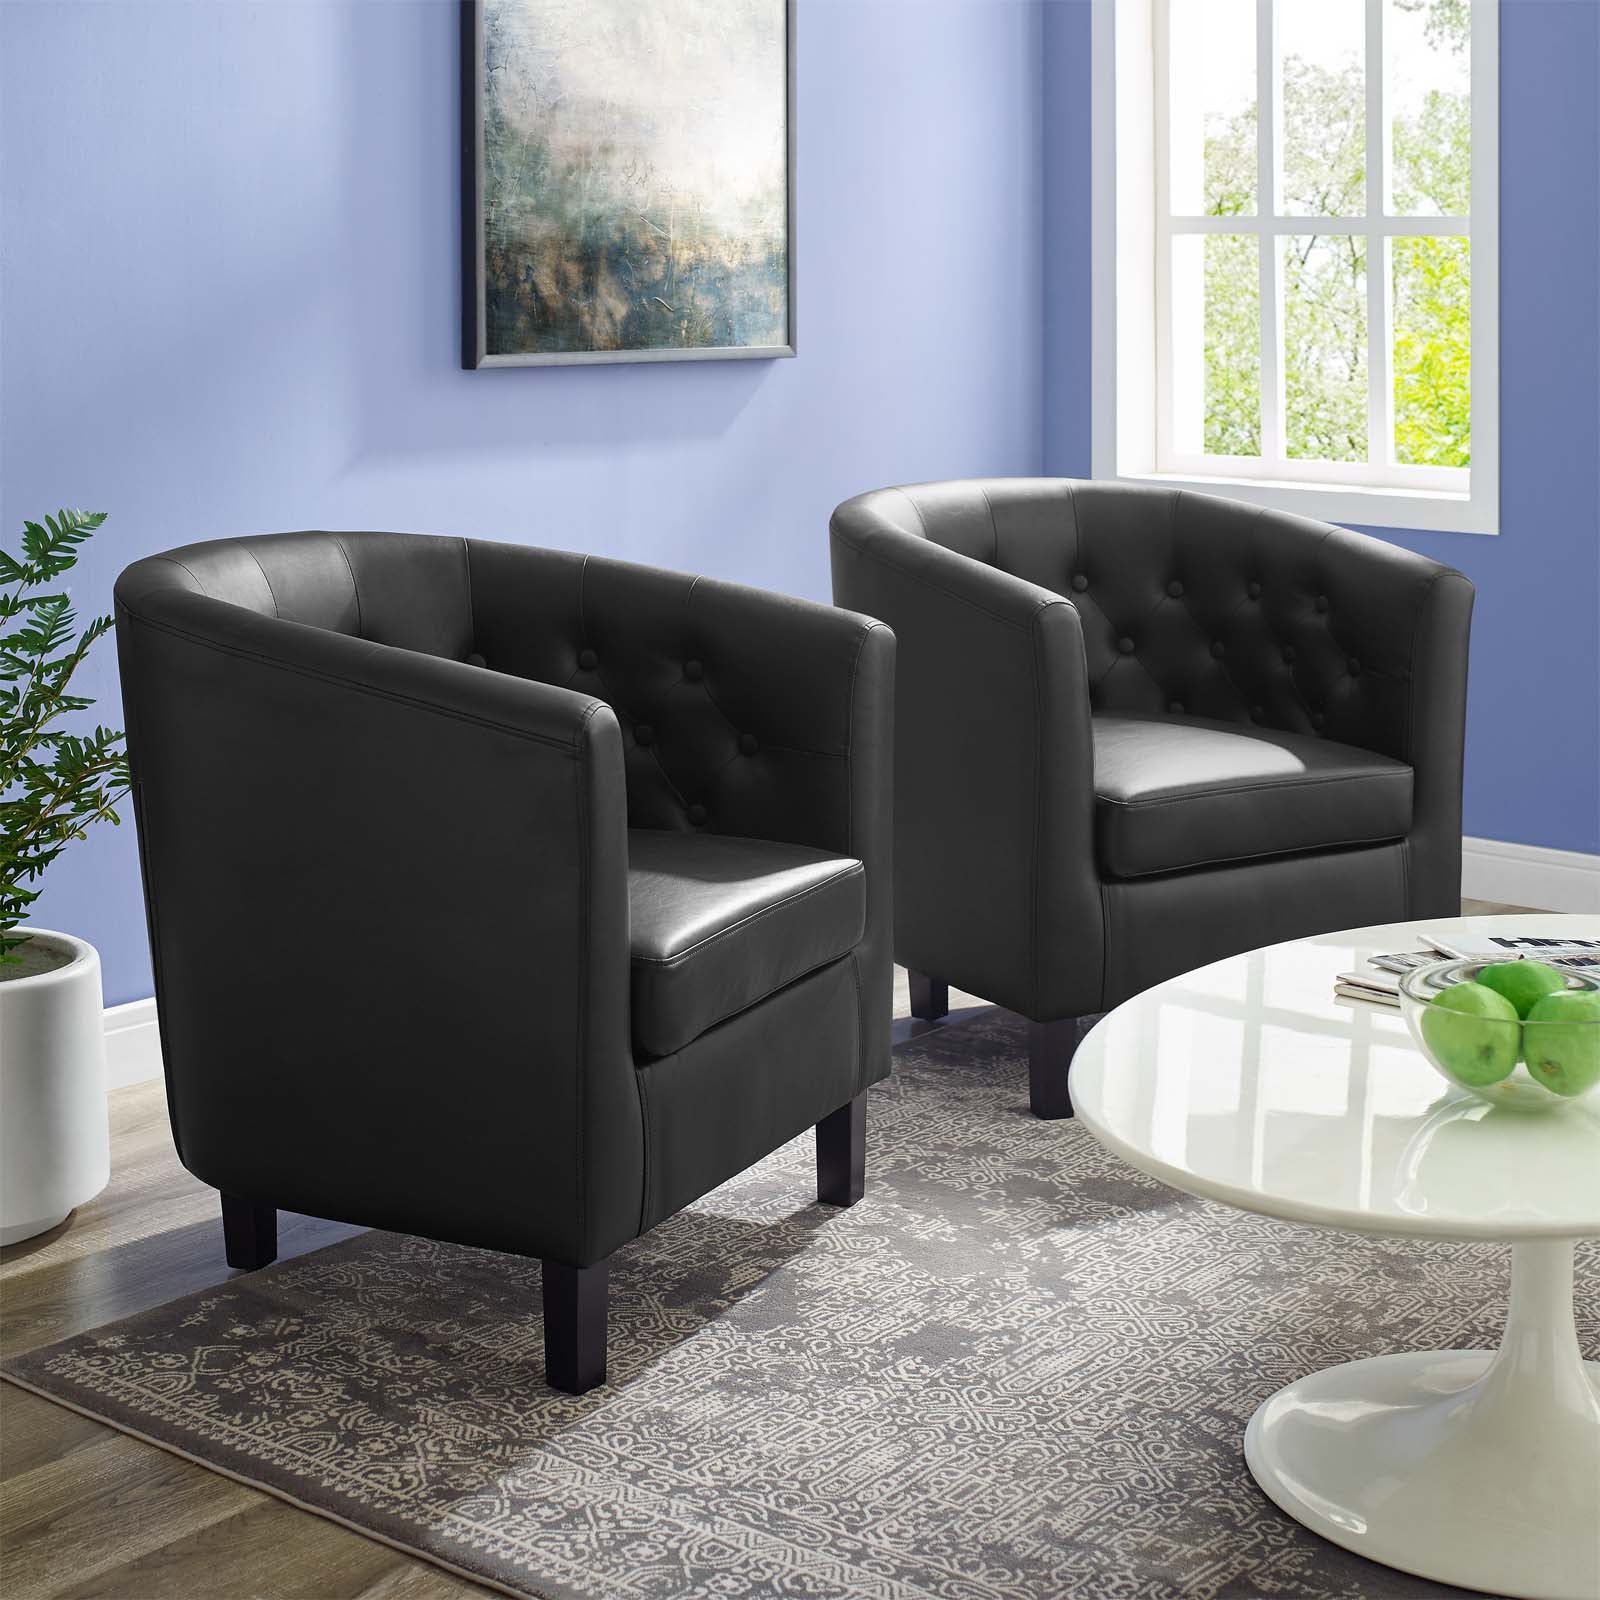 Prospect Upholstered Vinyl Armchair Set of 2 - East Shore Modern Home Furnishings